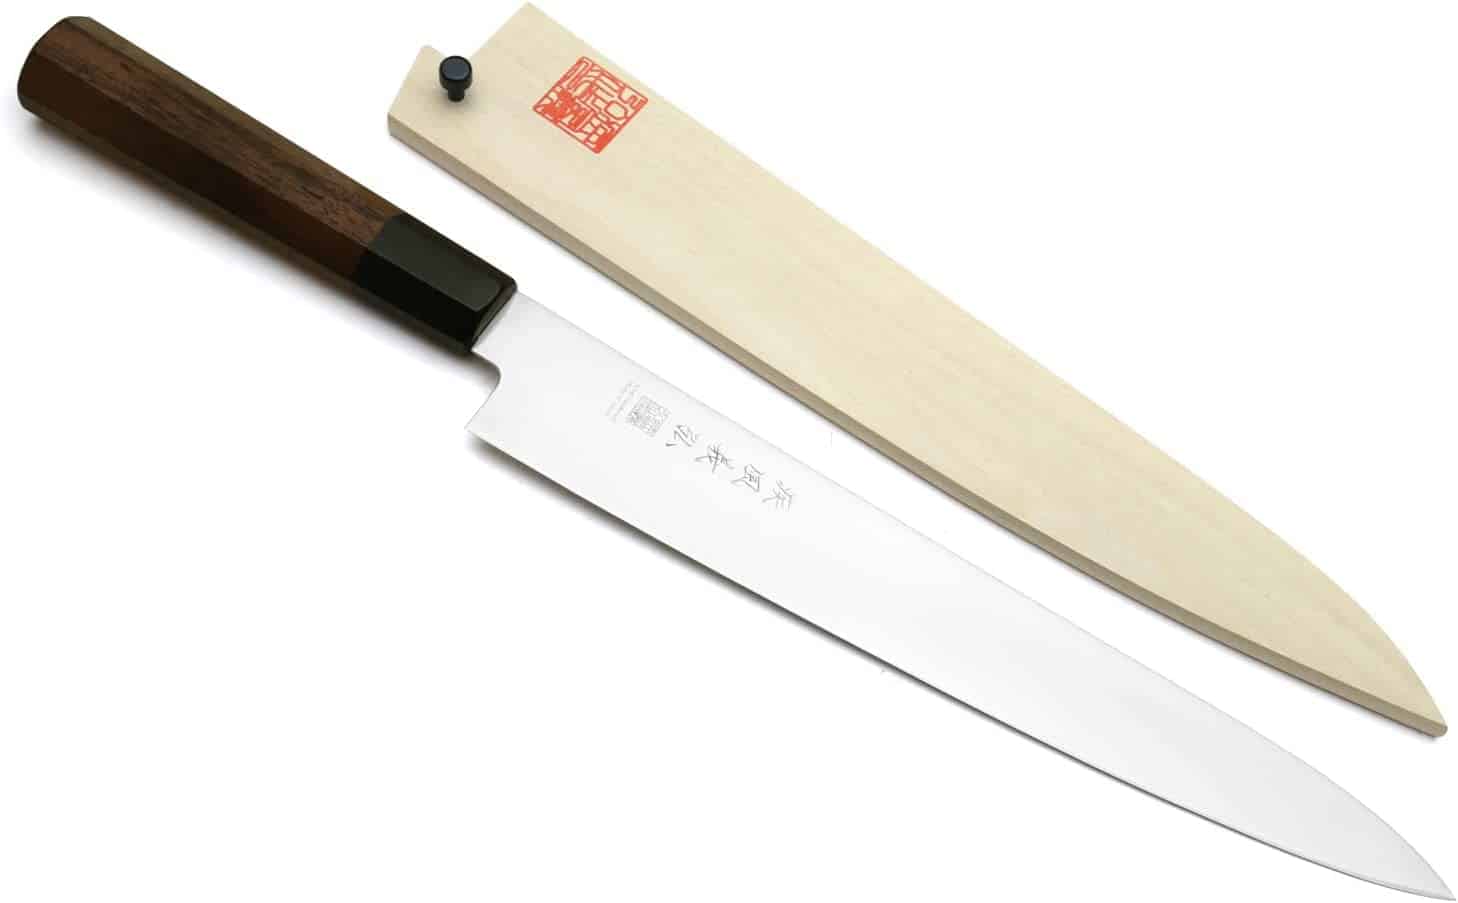 Best overall Sujihiki knife- Yoshihiro Ice Hardened 9.5 AUS-8 Stainless Steel